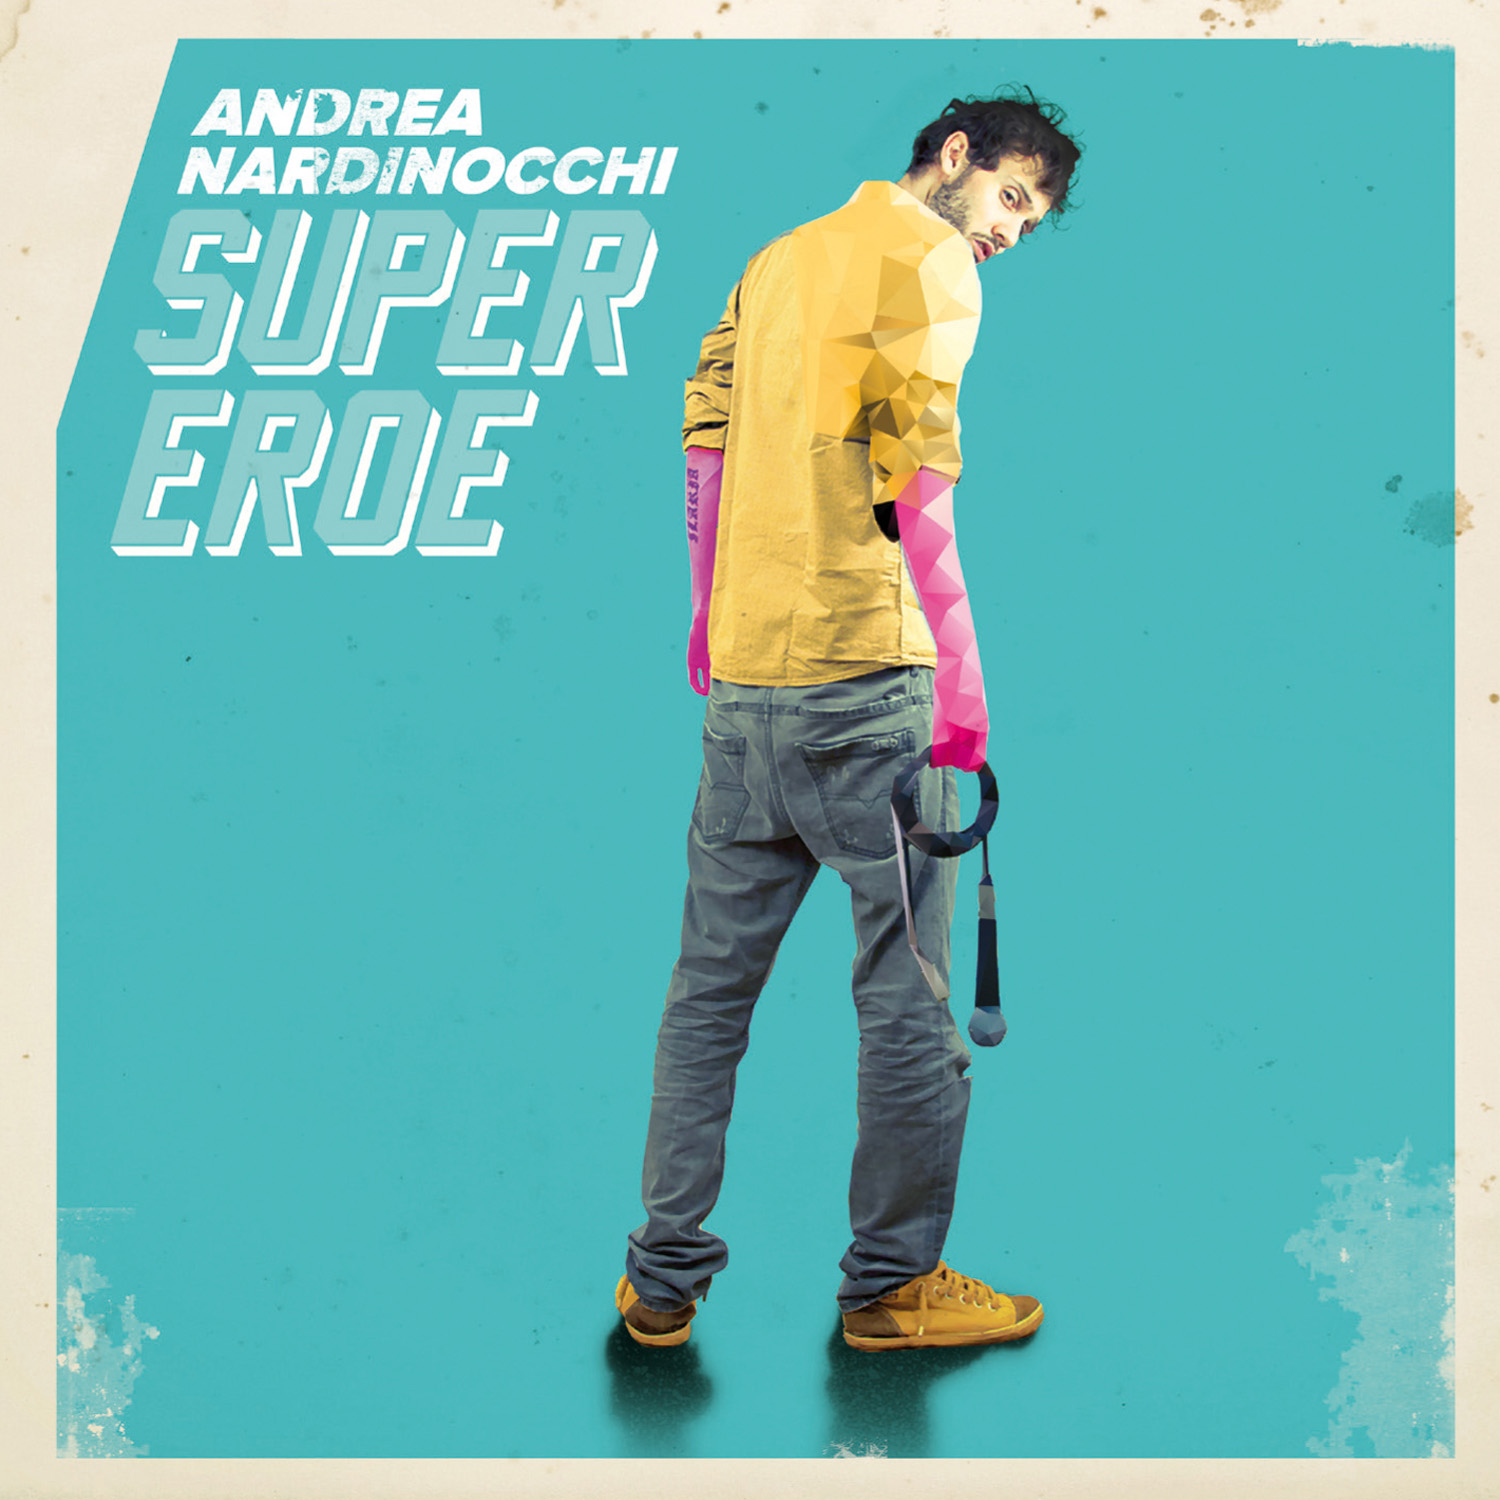 Andrea Nardinocchi: arriva oggi "Supereroe", il nuovo album